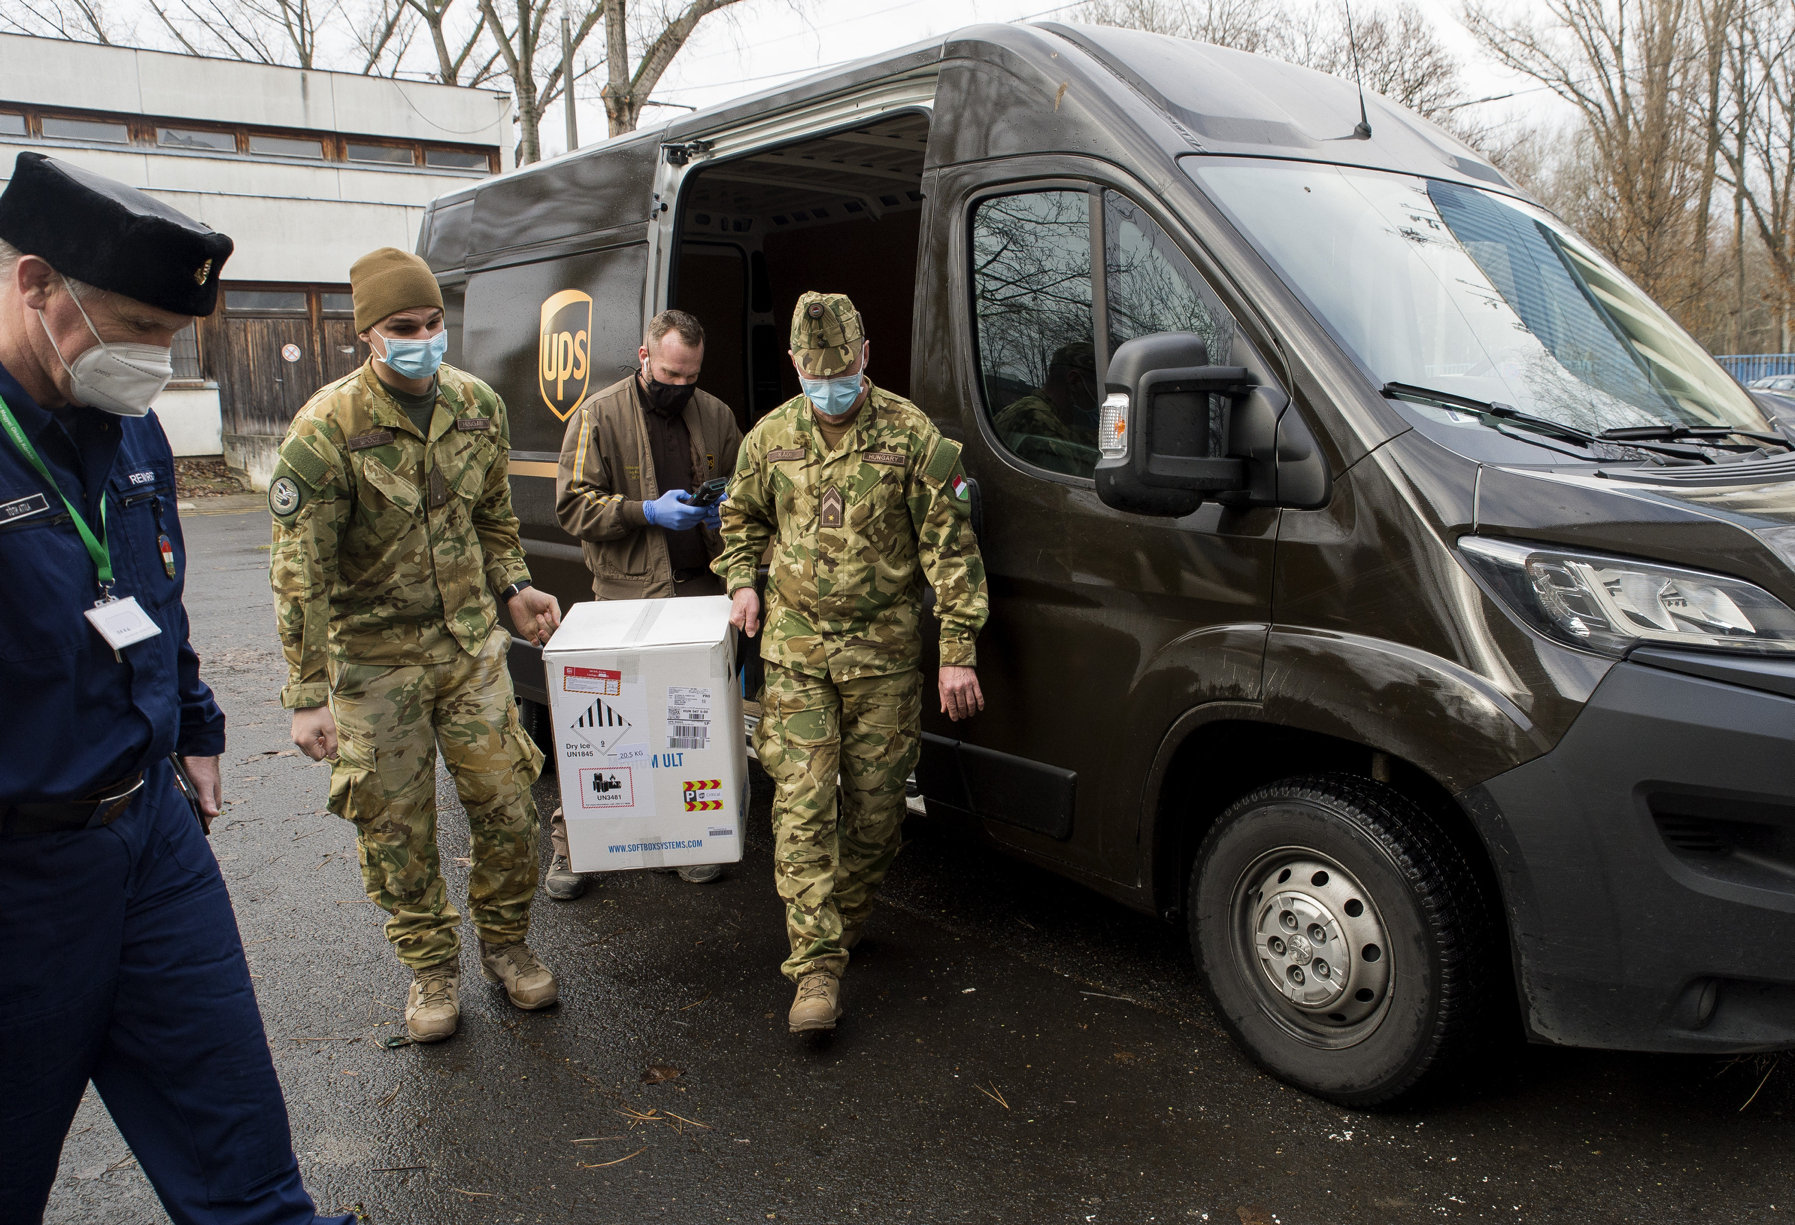 A gyõri Petz Aladár Megyei Oktató kórházba érkezett Pfizer-BioNTech vakcinákat tartalmazó dobozt katonák viszik 2020. december 30-án.